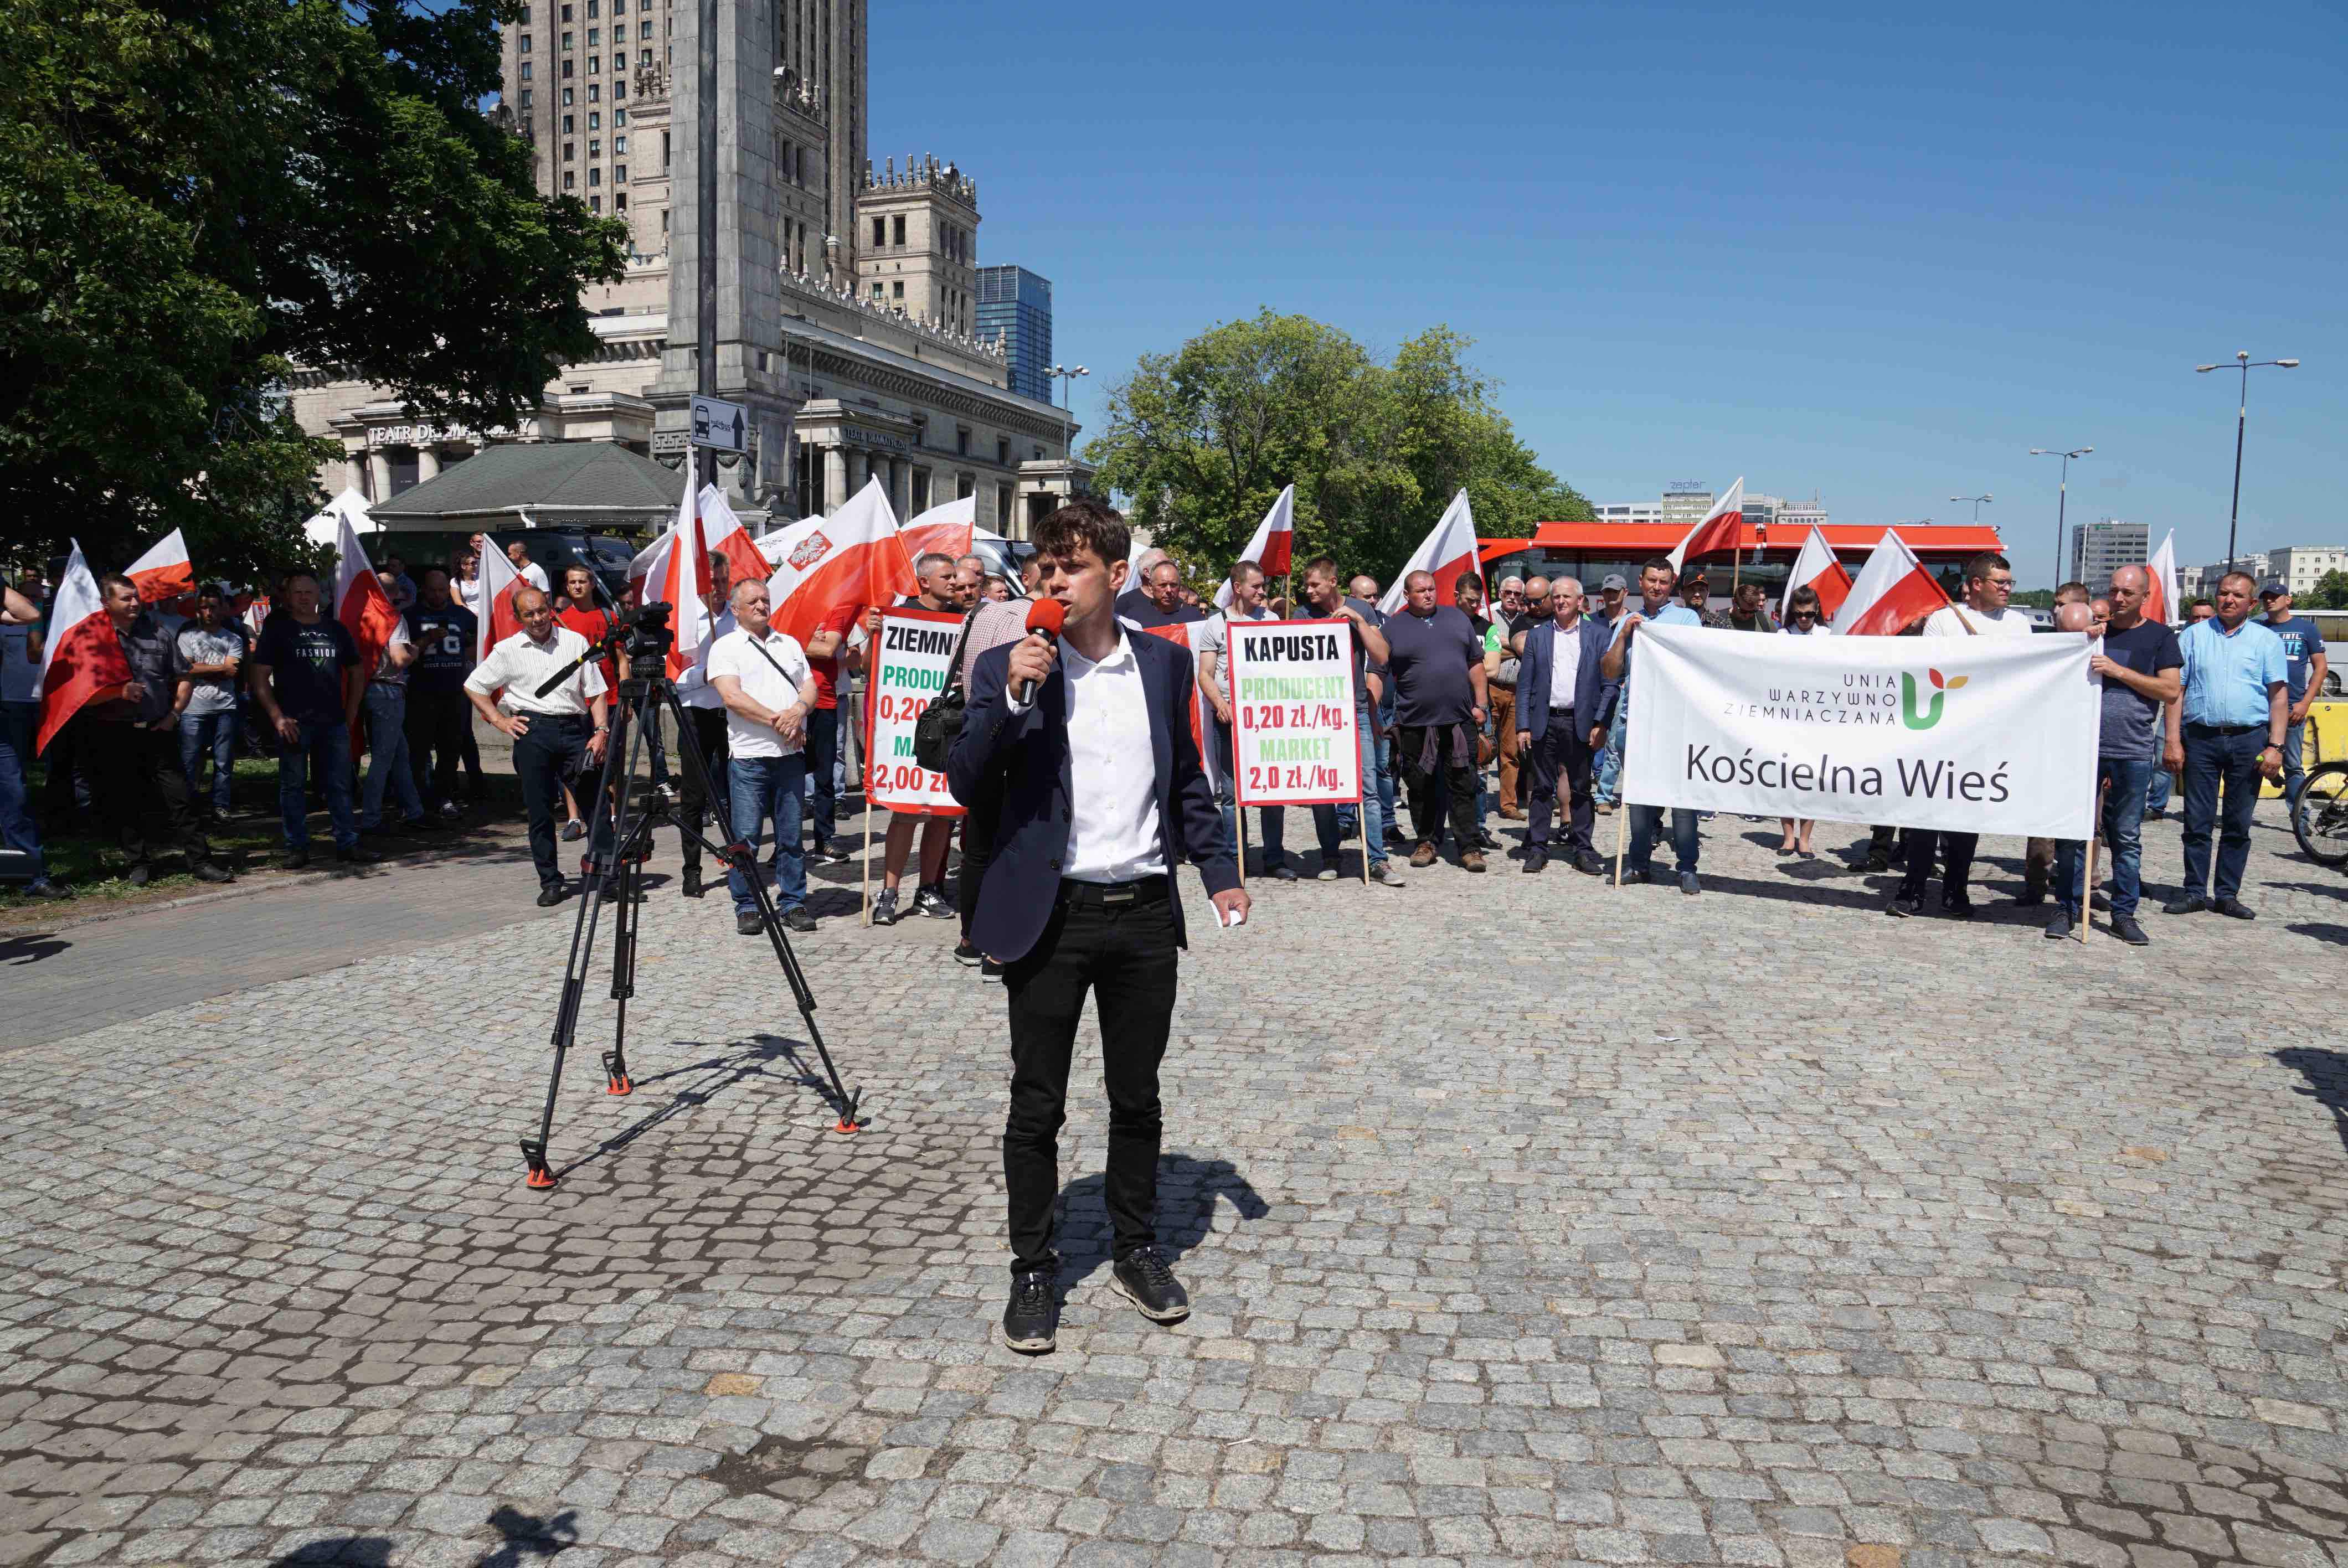 – Chcemy pokazać w Warszawie, że na polskiej wsi jest problem. Do tej pory pokazywaliśmy naszą sytuację w naszych małych miejscowościach, demonstrując na pasach. Ale prawie nikt nie zwracał uwagi. Dlatego zdecydowaliśmy się na demonstracje w stolicy – mówił Michał Kołodziejczak, prezes Unii Warzywno-Ziemniaczanej i organizator protestu.